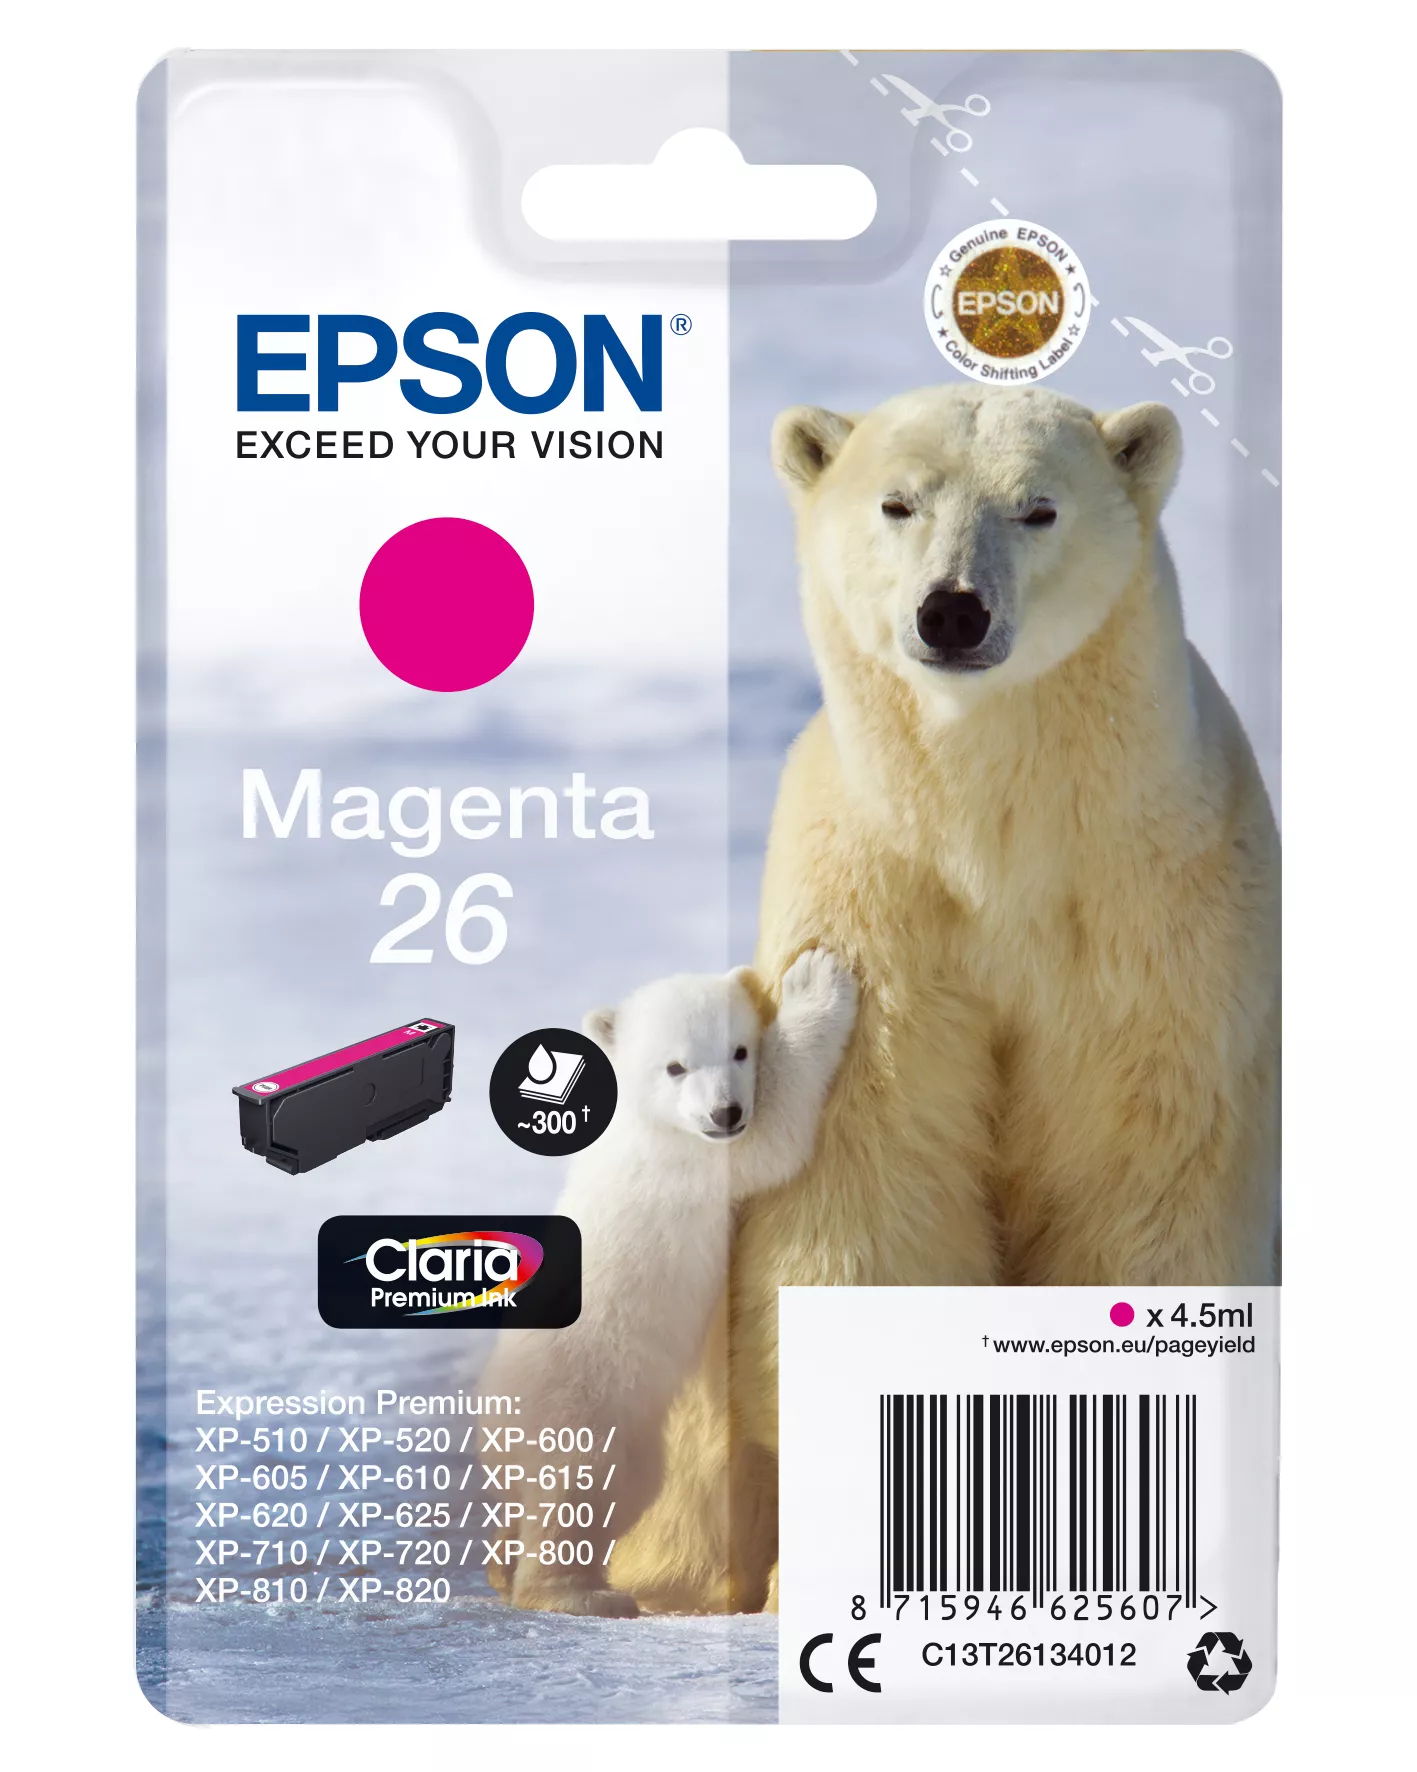 Achat EPSON 26 cartouche encre magenta capacité standard 4.5ml au meilleur prix